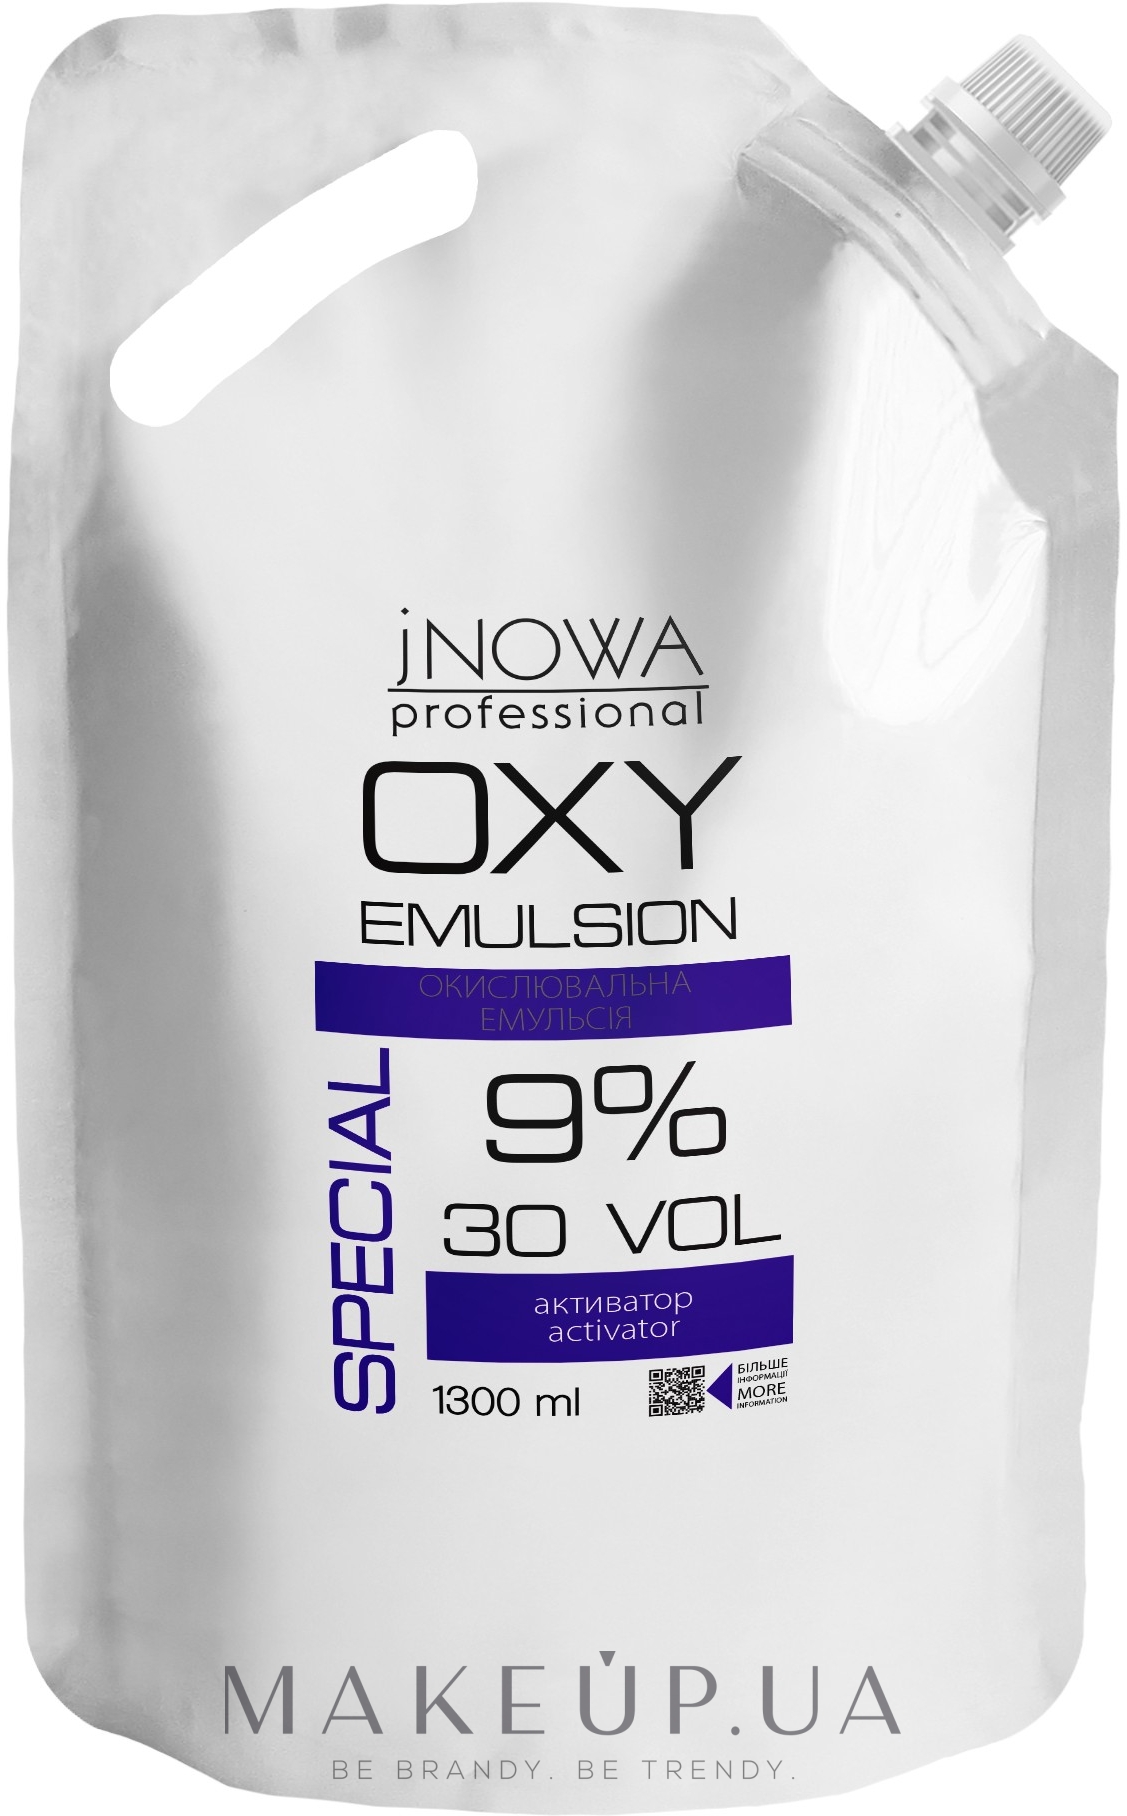 Окислительная эмульсия 9% - jNOWA Professional OXY Emulsion Special 30 vol (дой-пак) — фото 1300ml